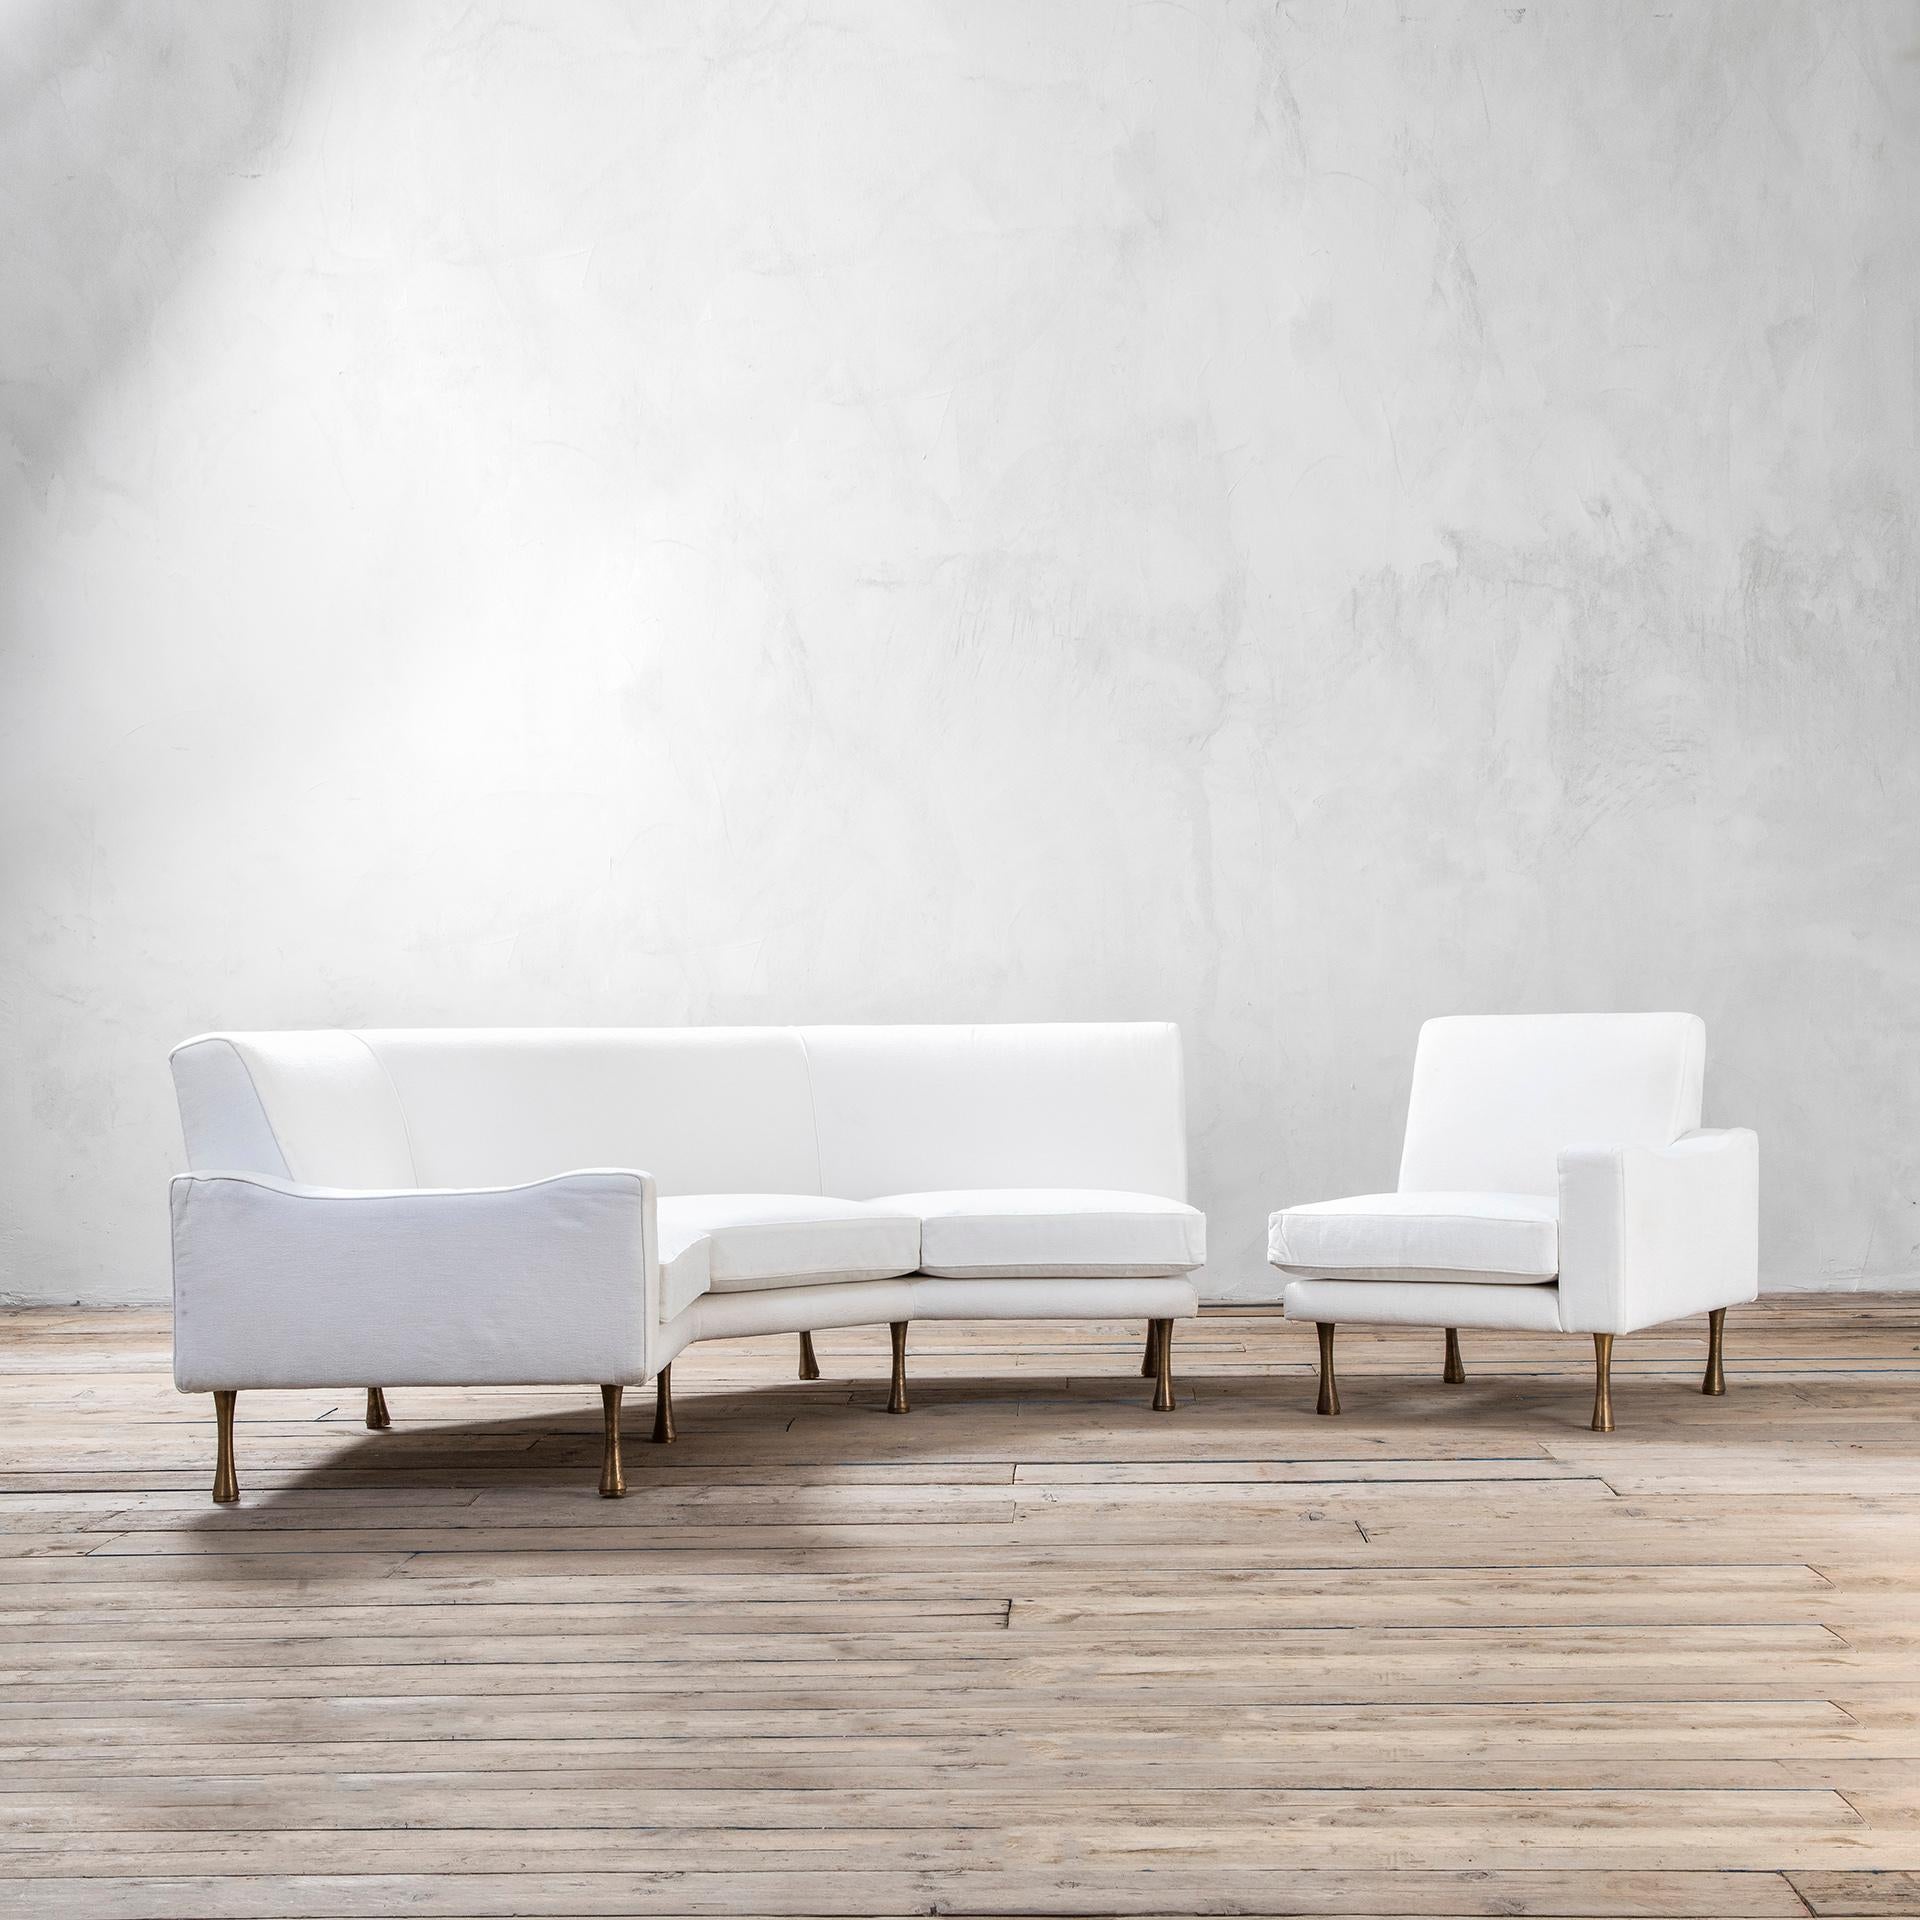 Sektionssofa von Angelo Mangiarotti für La Sorgente dei Mobili, entworfen in den 70er Jahren. Das Sofa besteht aus einem Ecksofa und einem zusätzlichen Sessel, aber wenn man den Sessel in die Nähe des Sofas stellt, wirkt er wie ein Einzelstück. Die